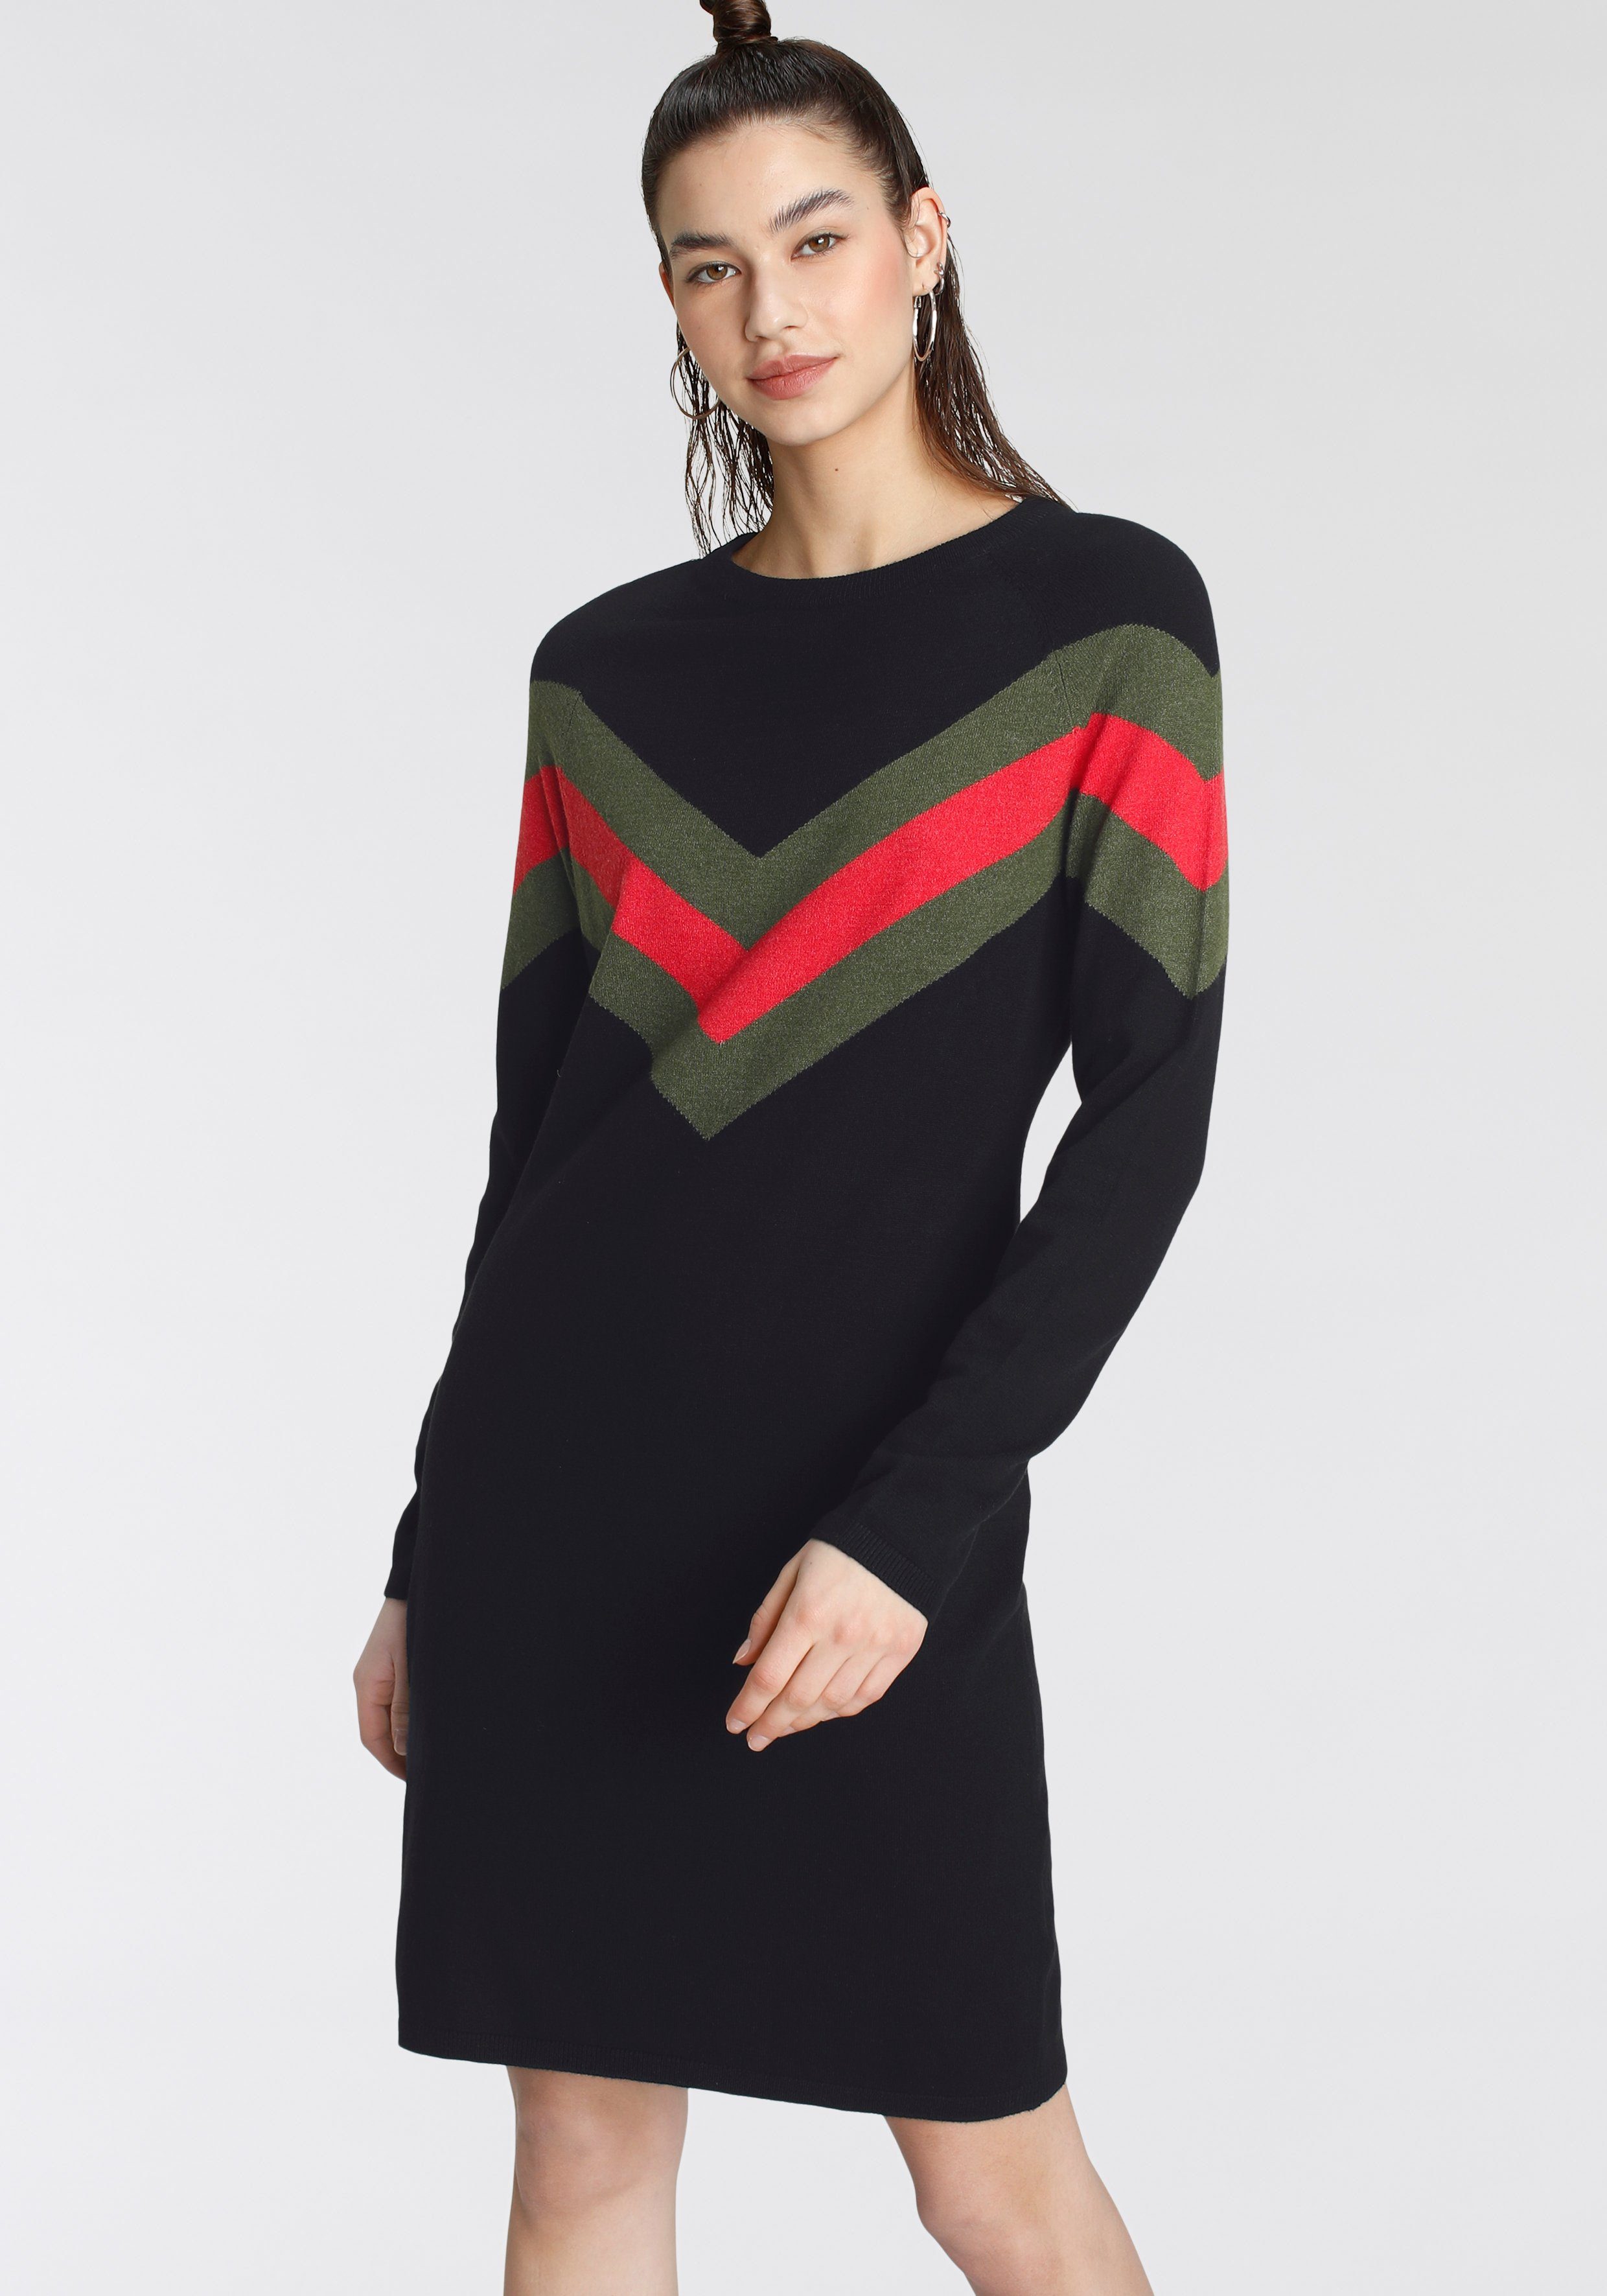 Tamaris Strickkleid mit Streifen-Muster khaki-schwarz (Kleid aus nachhaltigem Material)